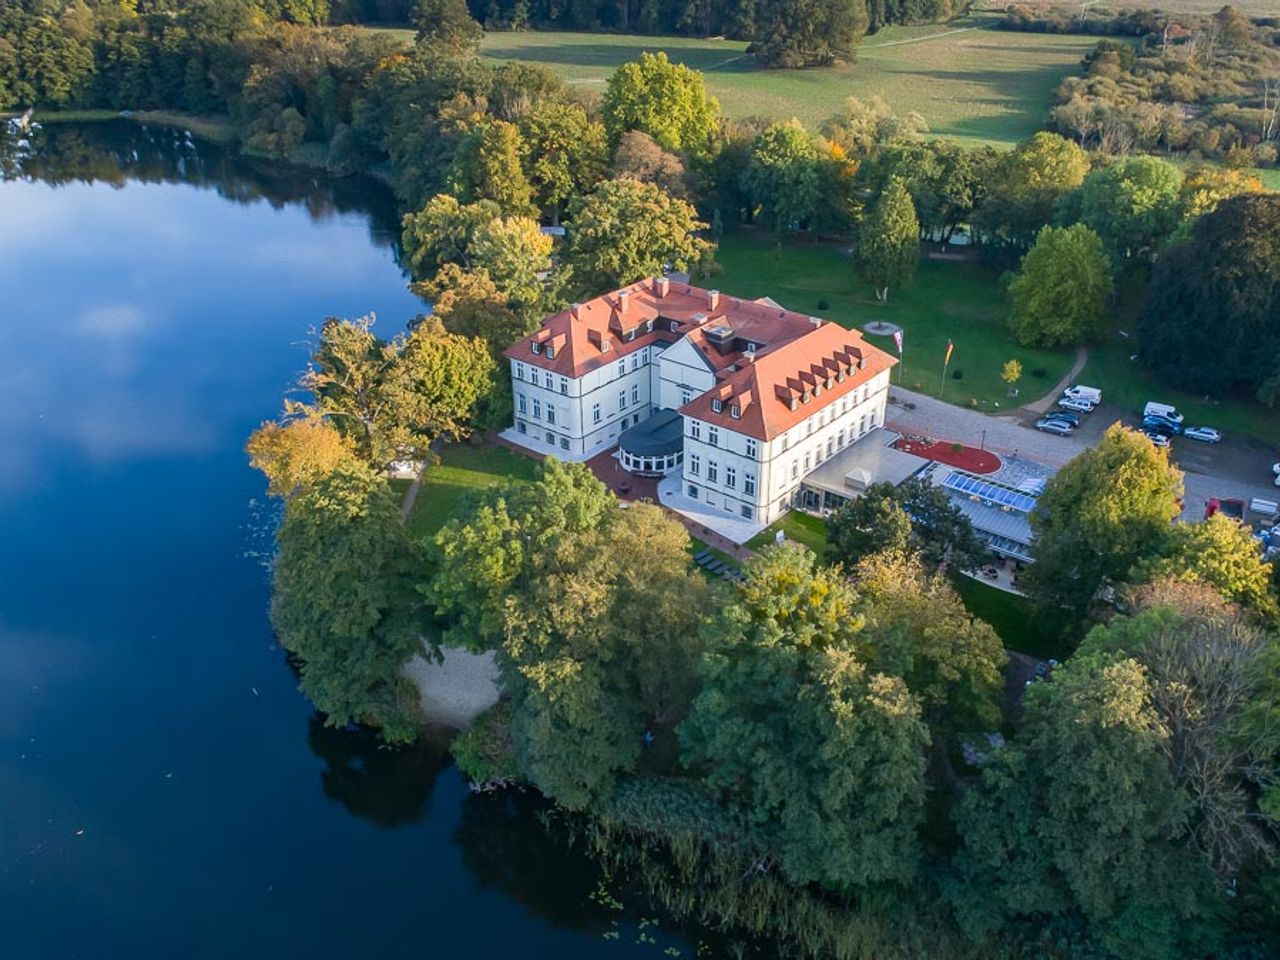 Romantische Auszeit im Schloss in Mecklenburg